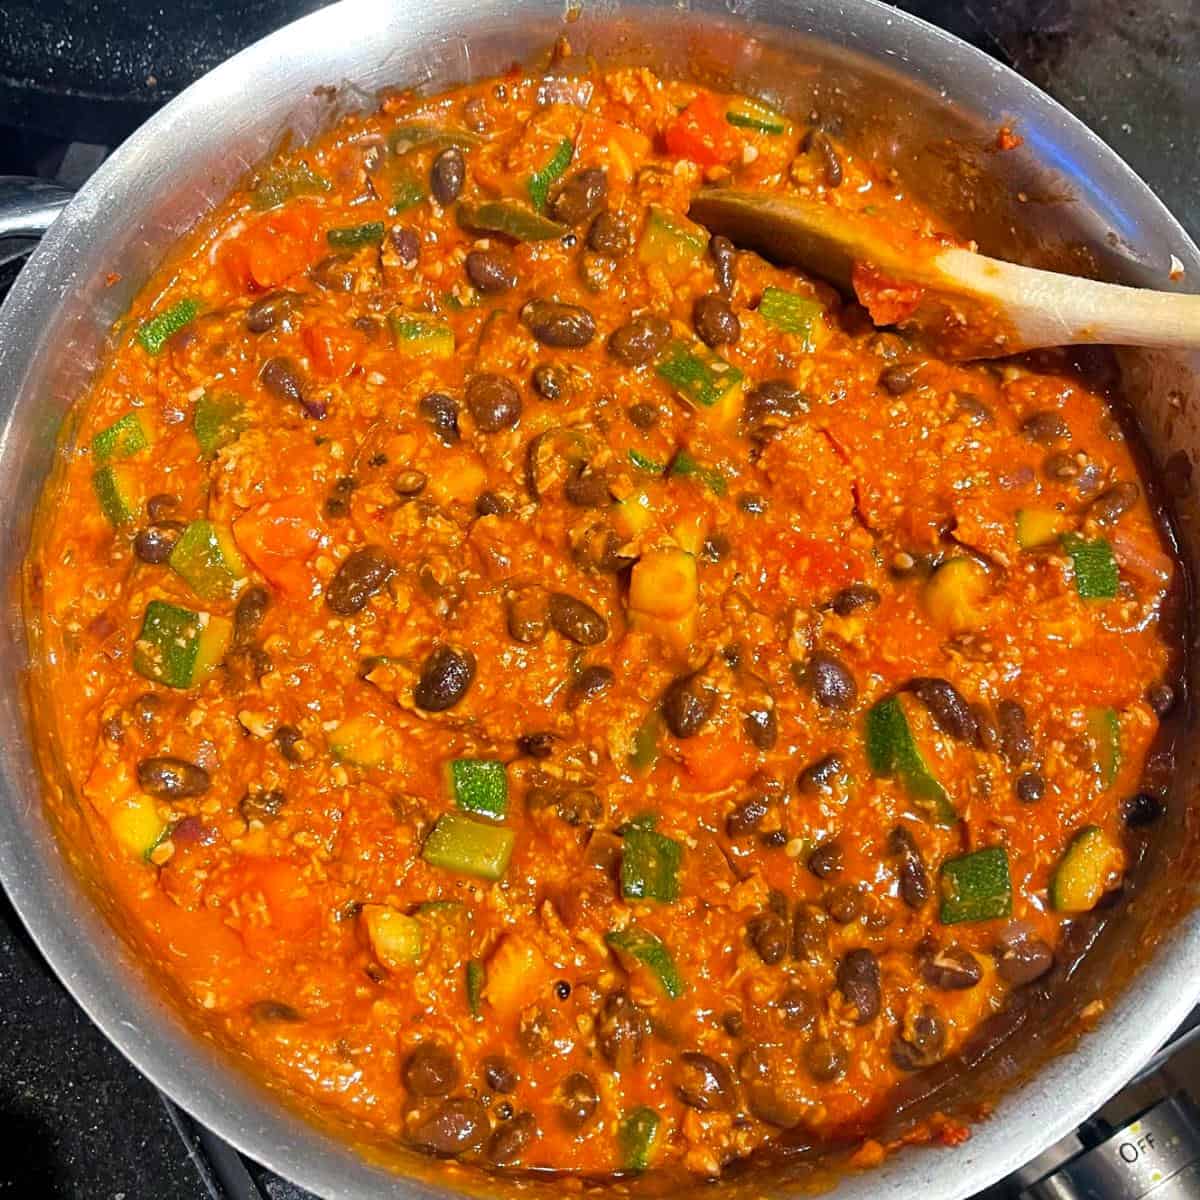 Vegansk chili tillagad till tamalepaj.